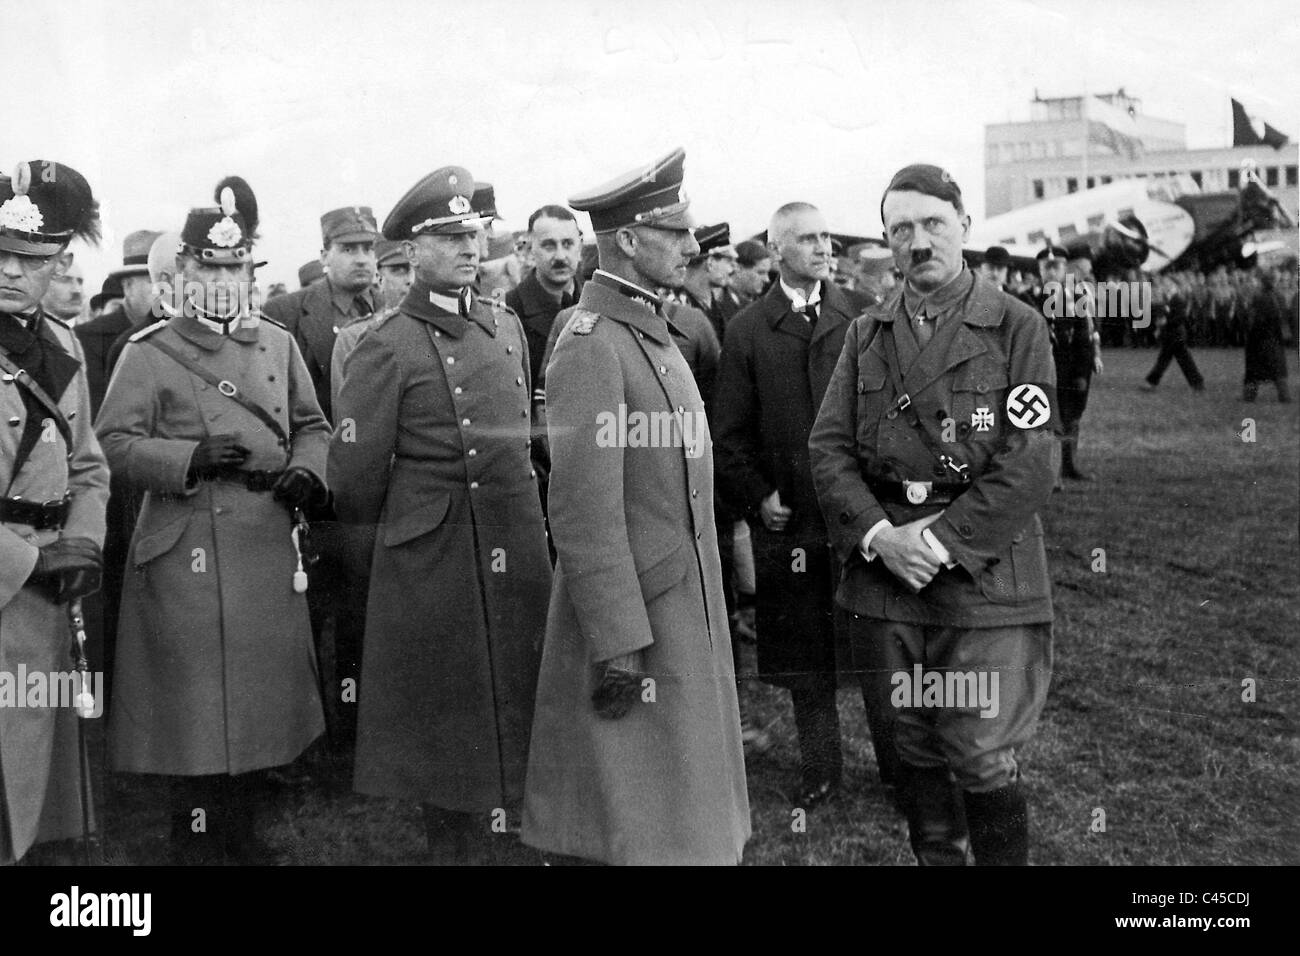 Hitler, von Leeb, Frick in Munich Stock Photo